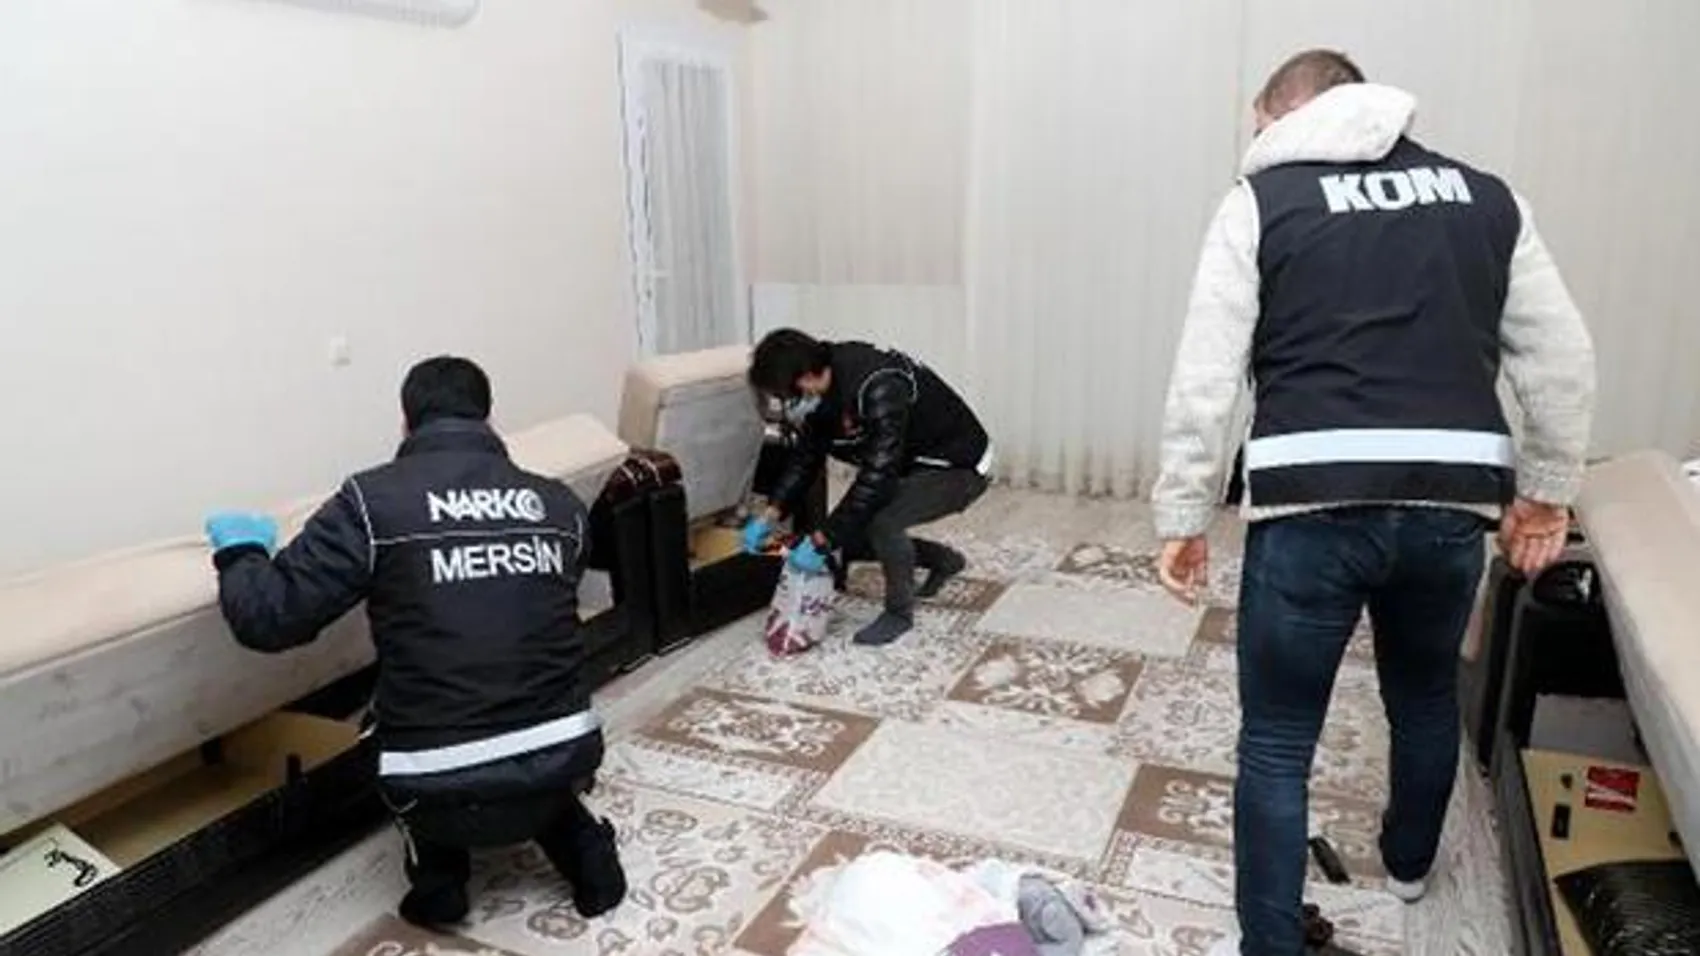 Mersin'de kaçakçı ve tefecilere operasyon: 12 gözaltı